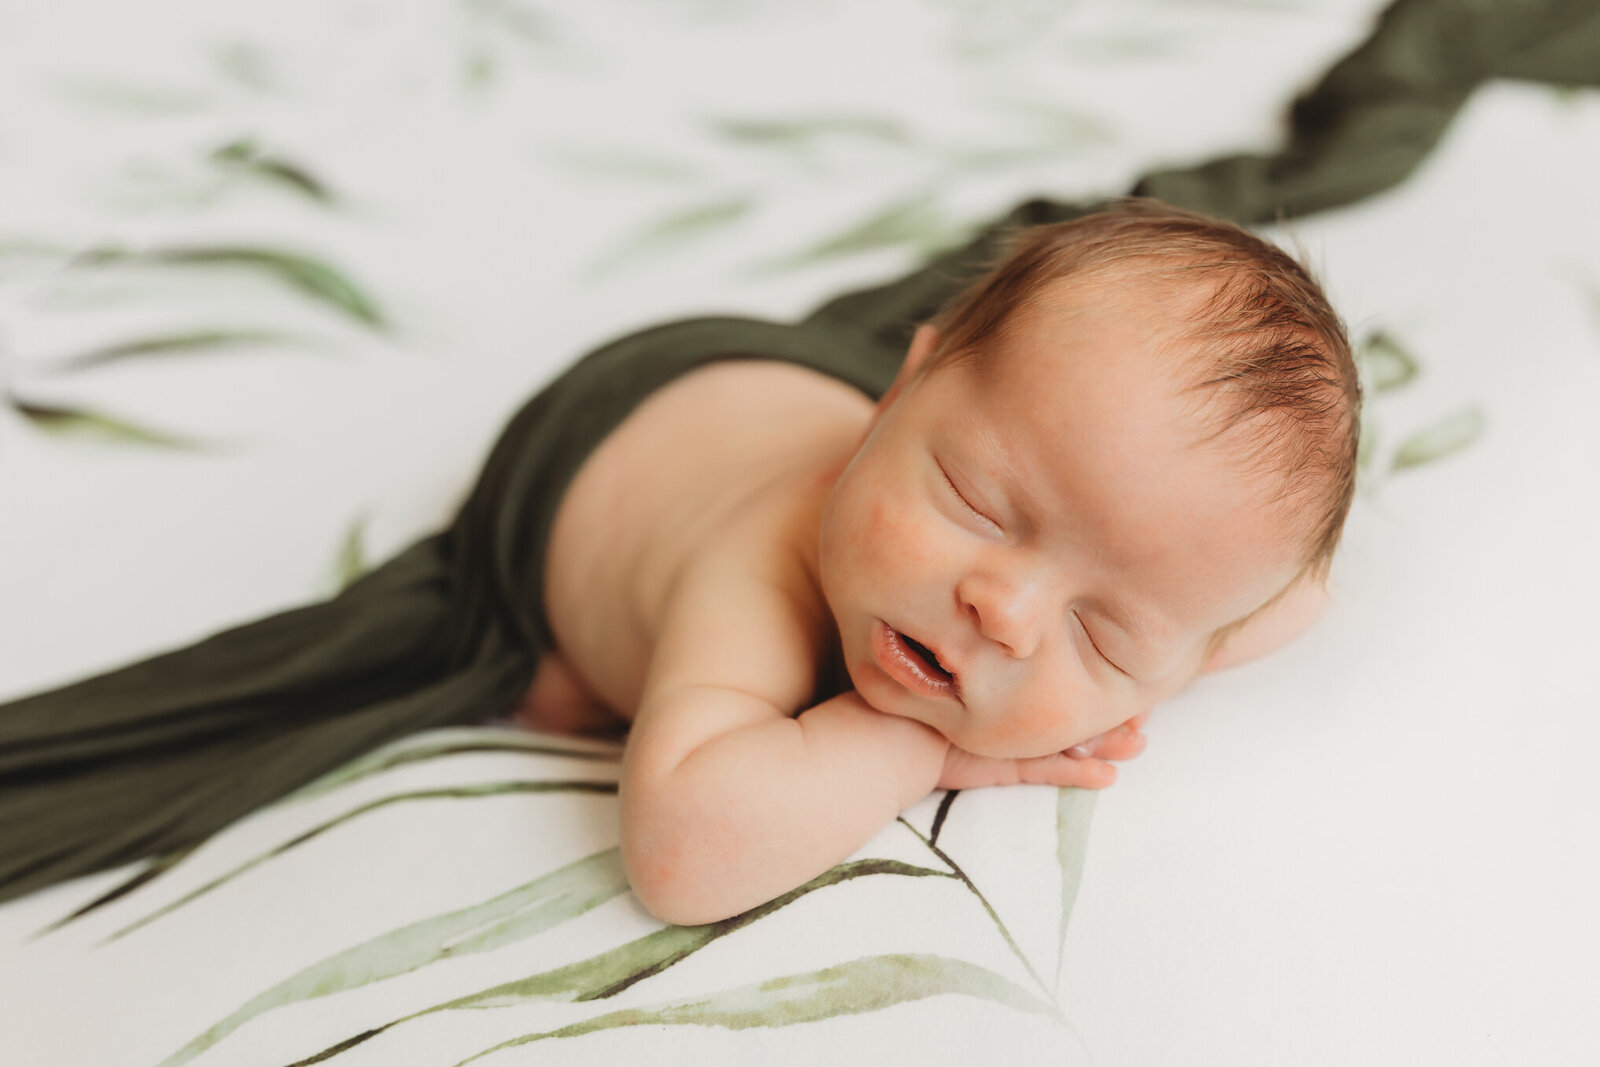 Newborn baby boy sleeping on a plant leaf backdrop